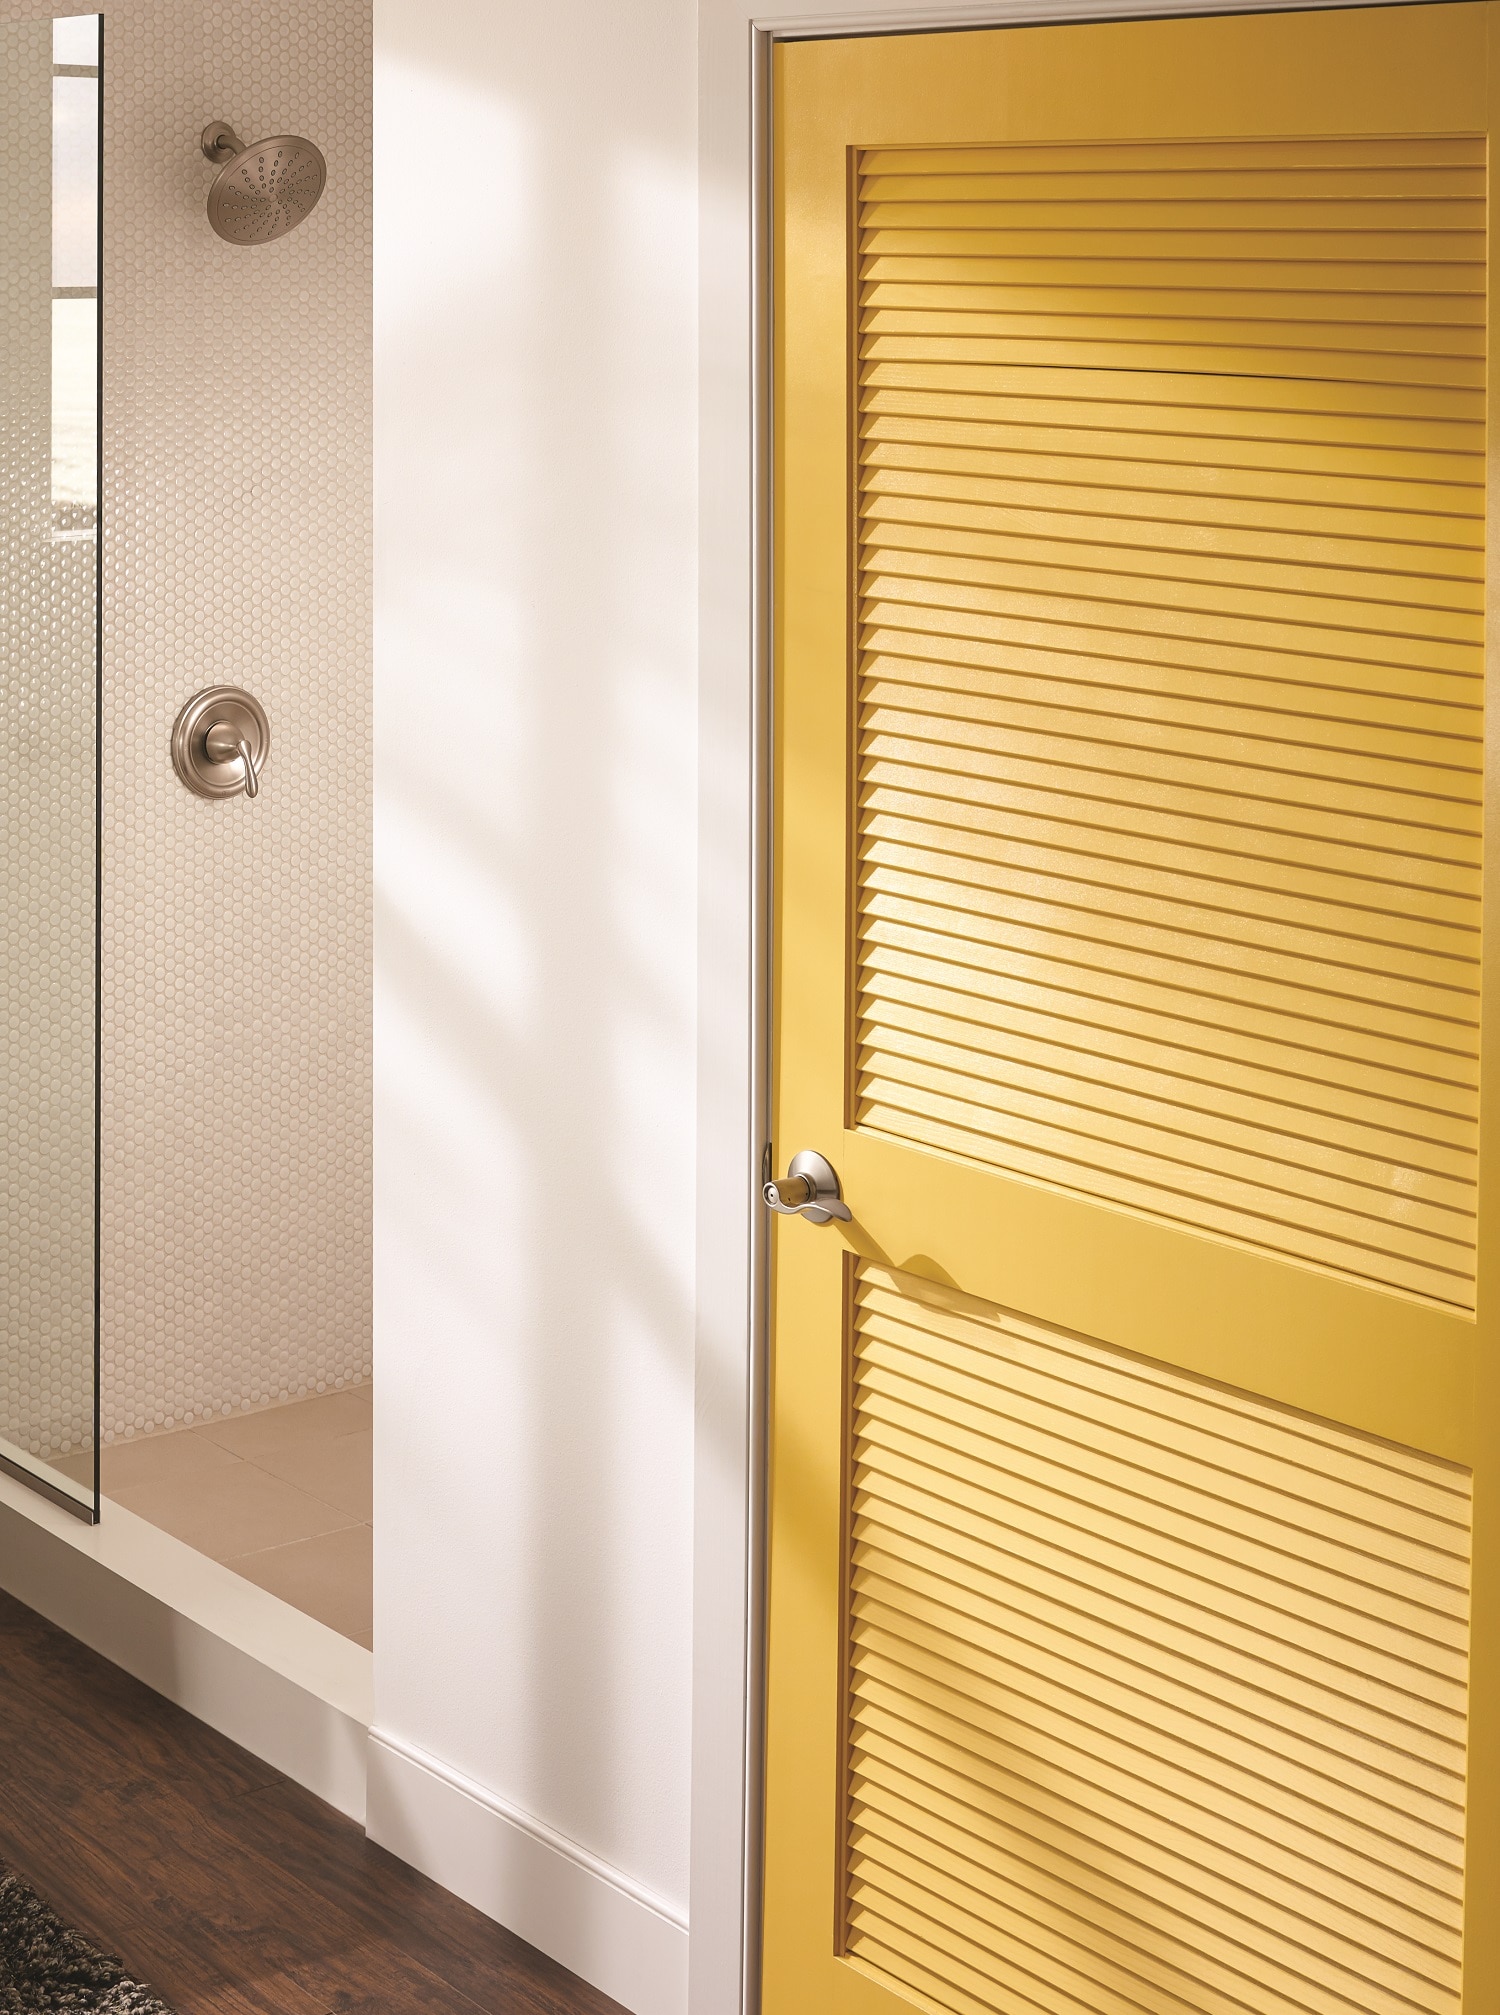 Schlage Accent Satin Nickel Interior Bed/Bath Privacy Door Handle